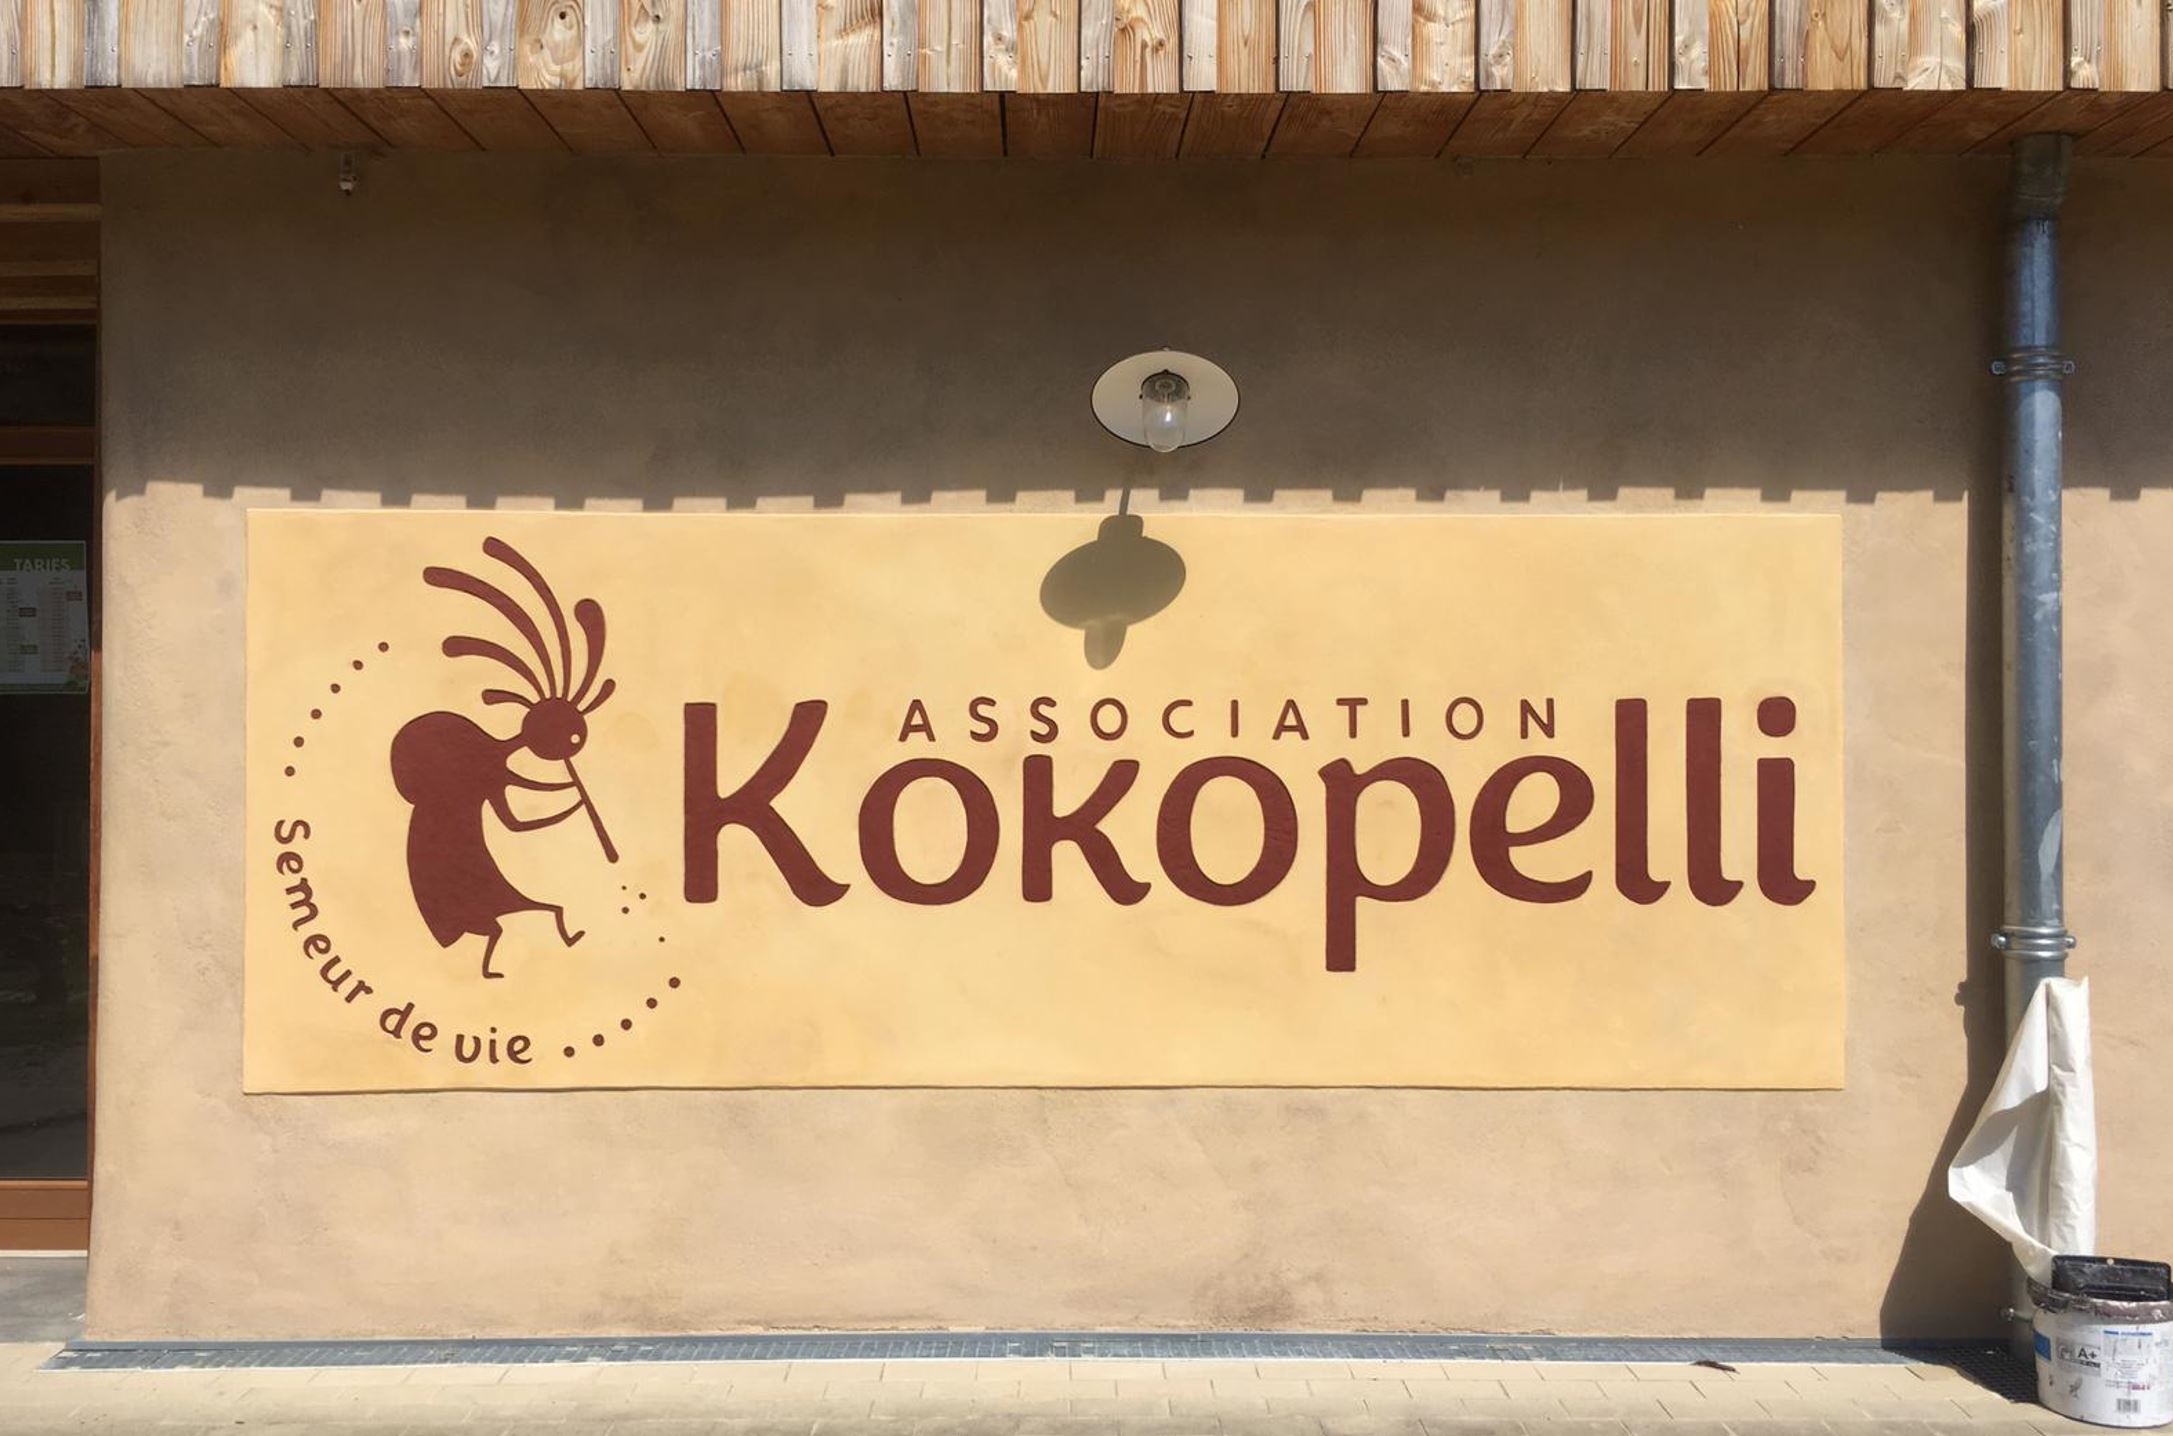 Association Kokopelli